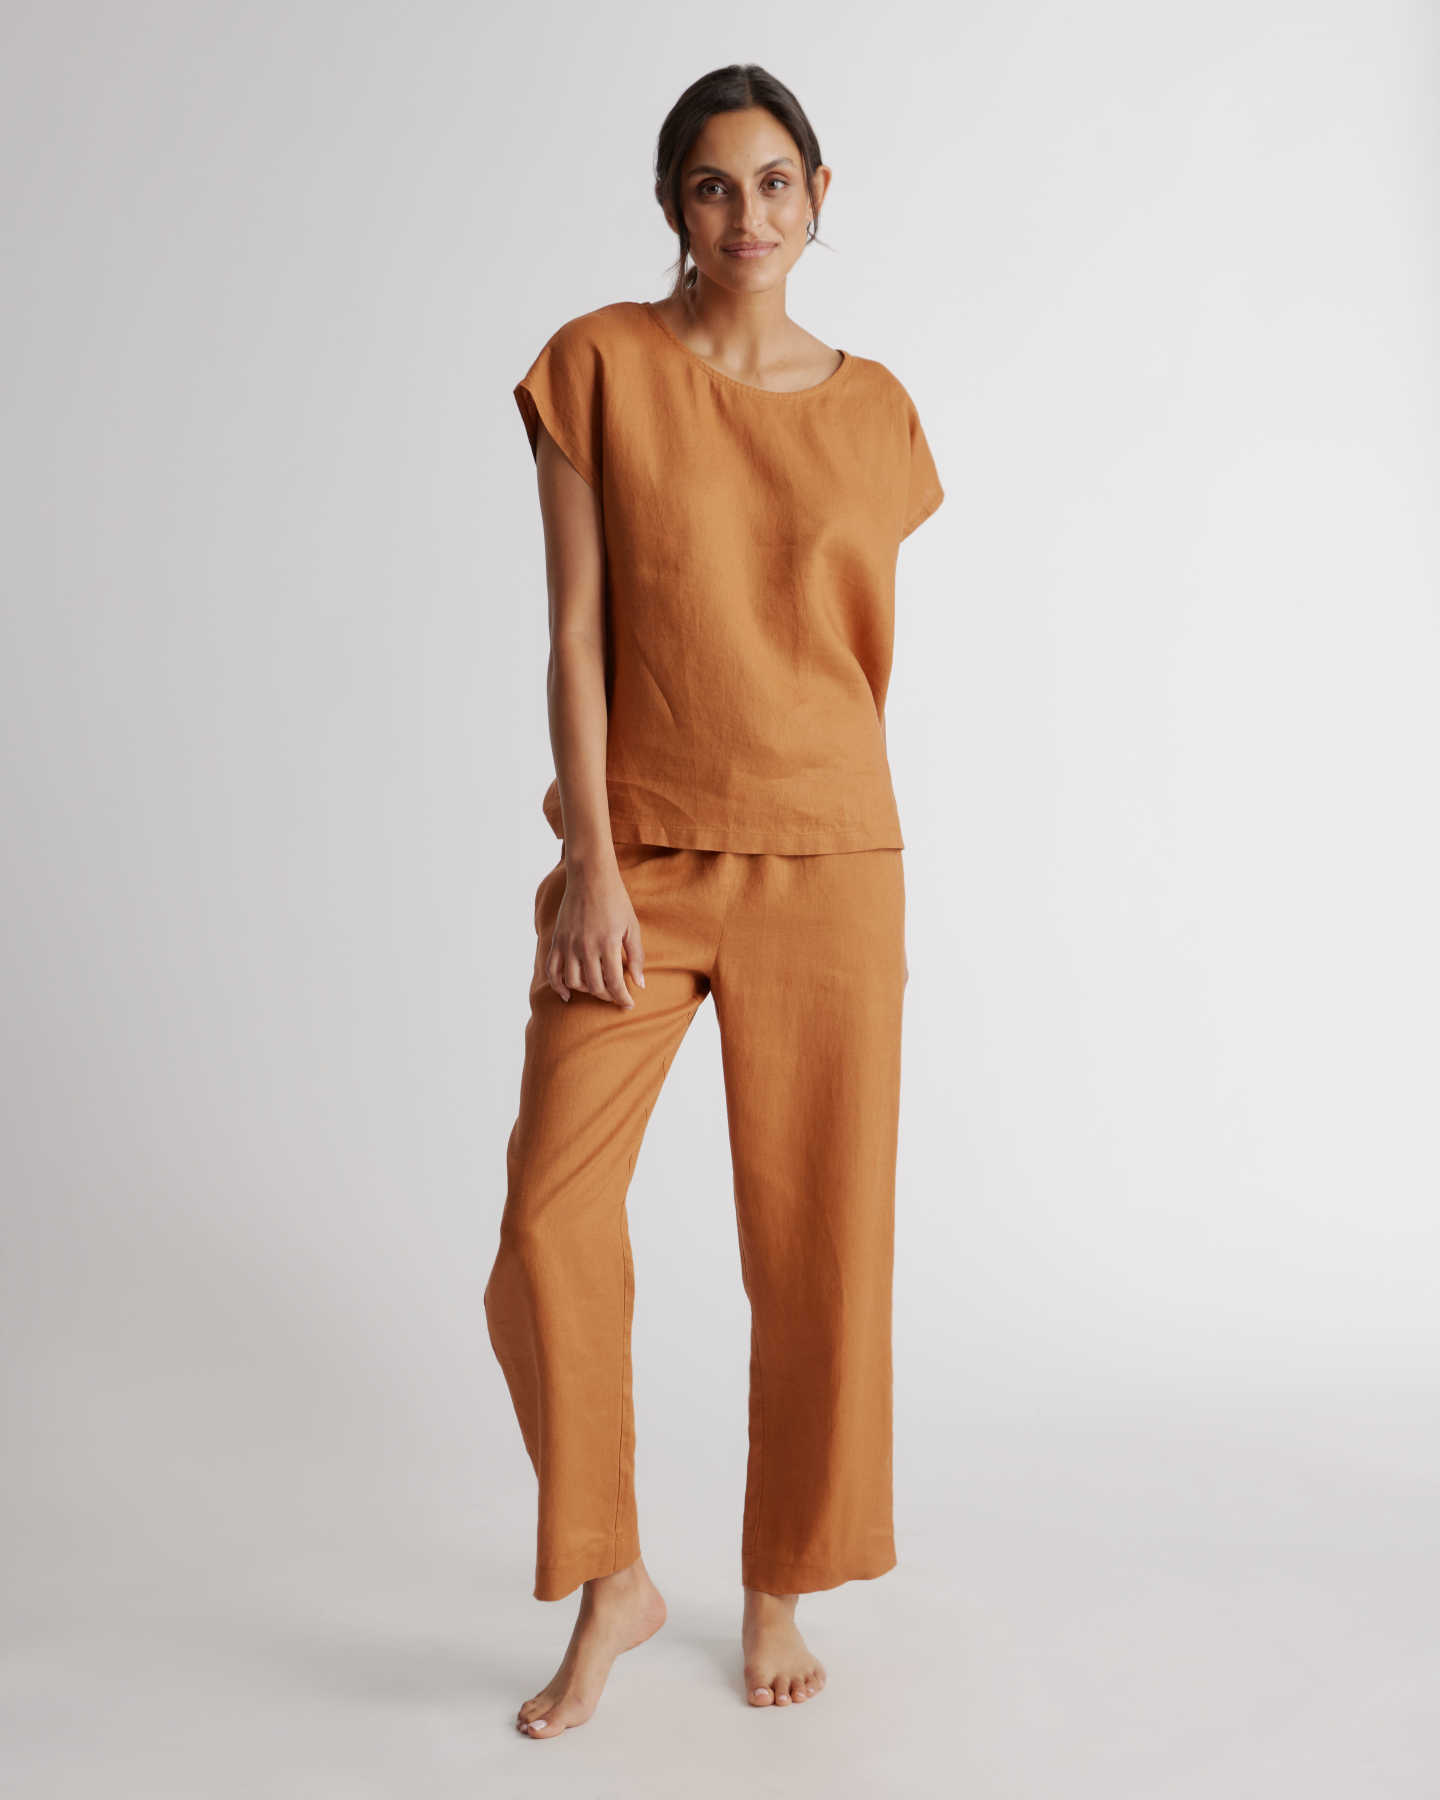 100% European Linen Pajama Set - Terracotta - 1